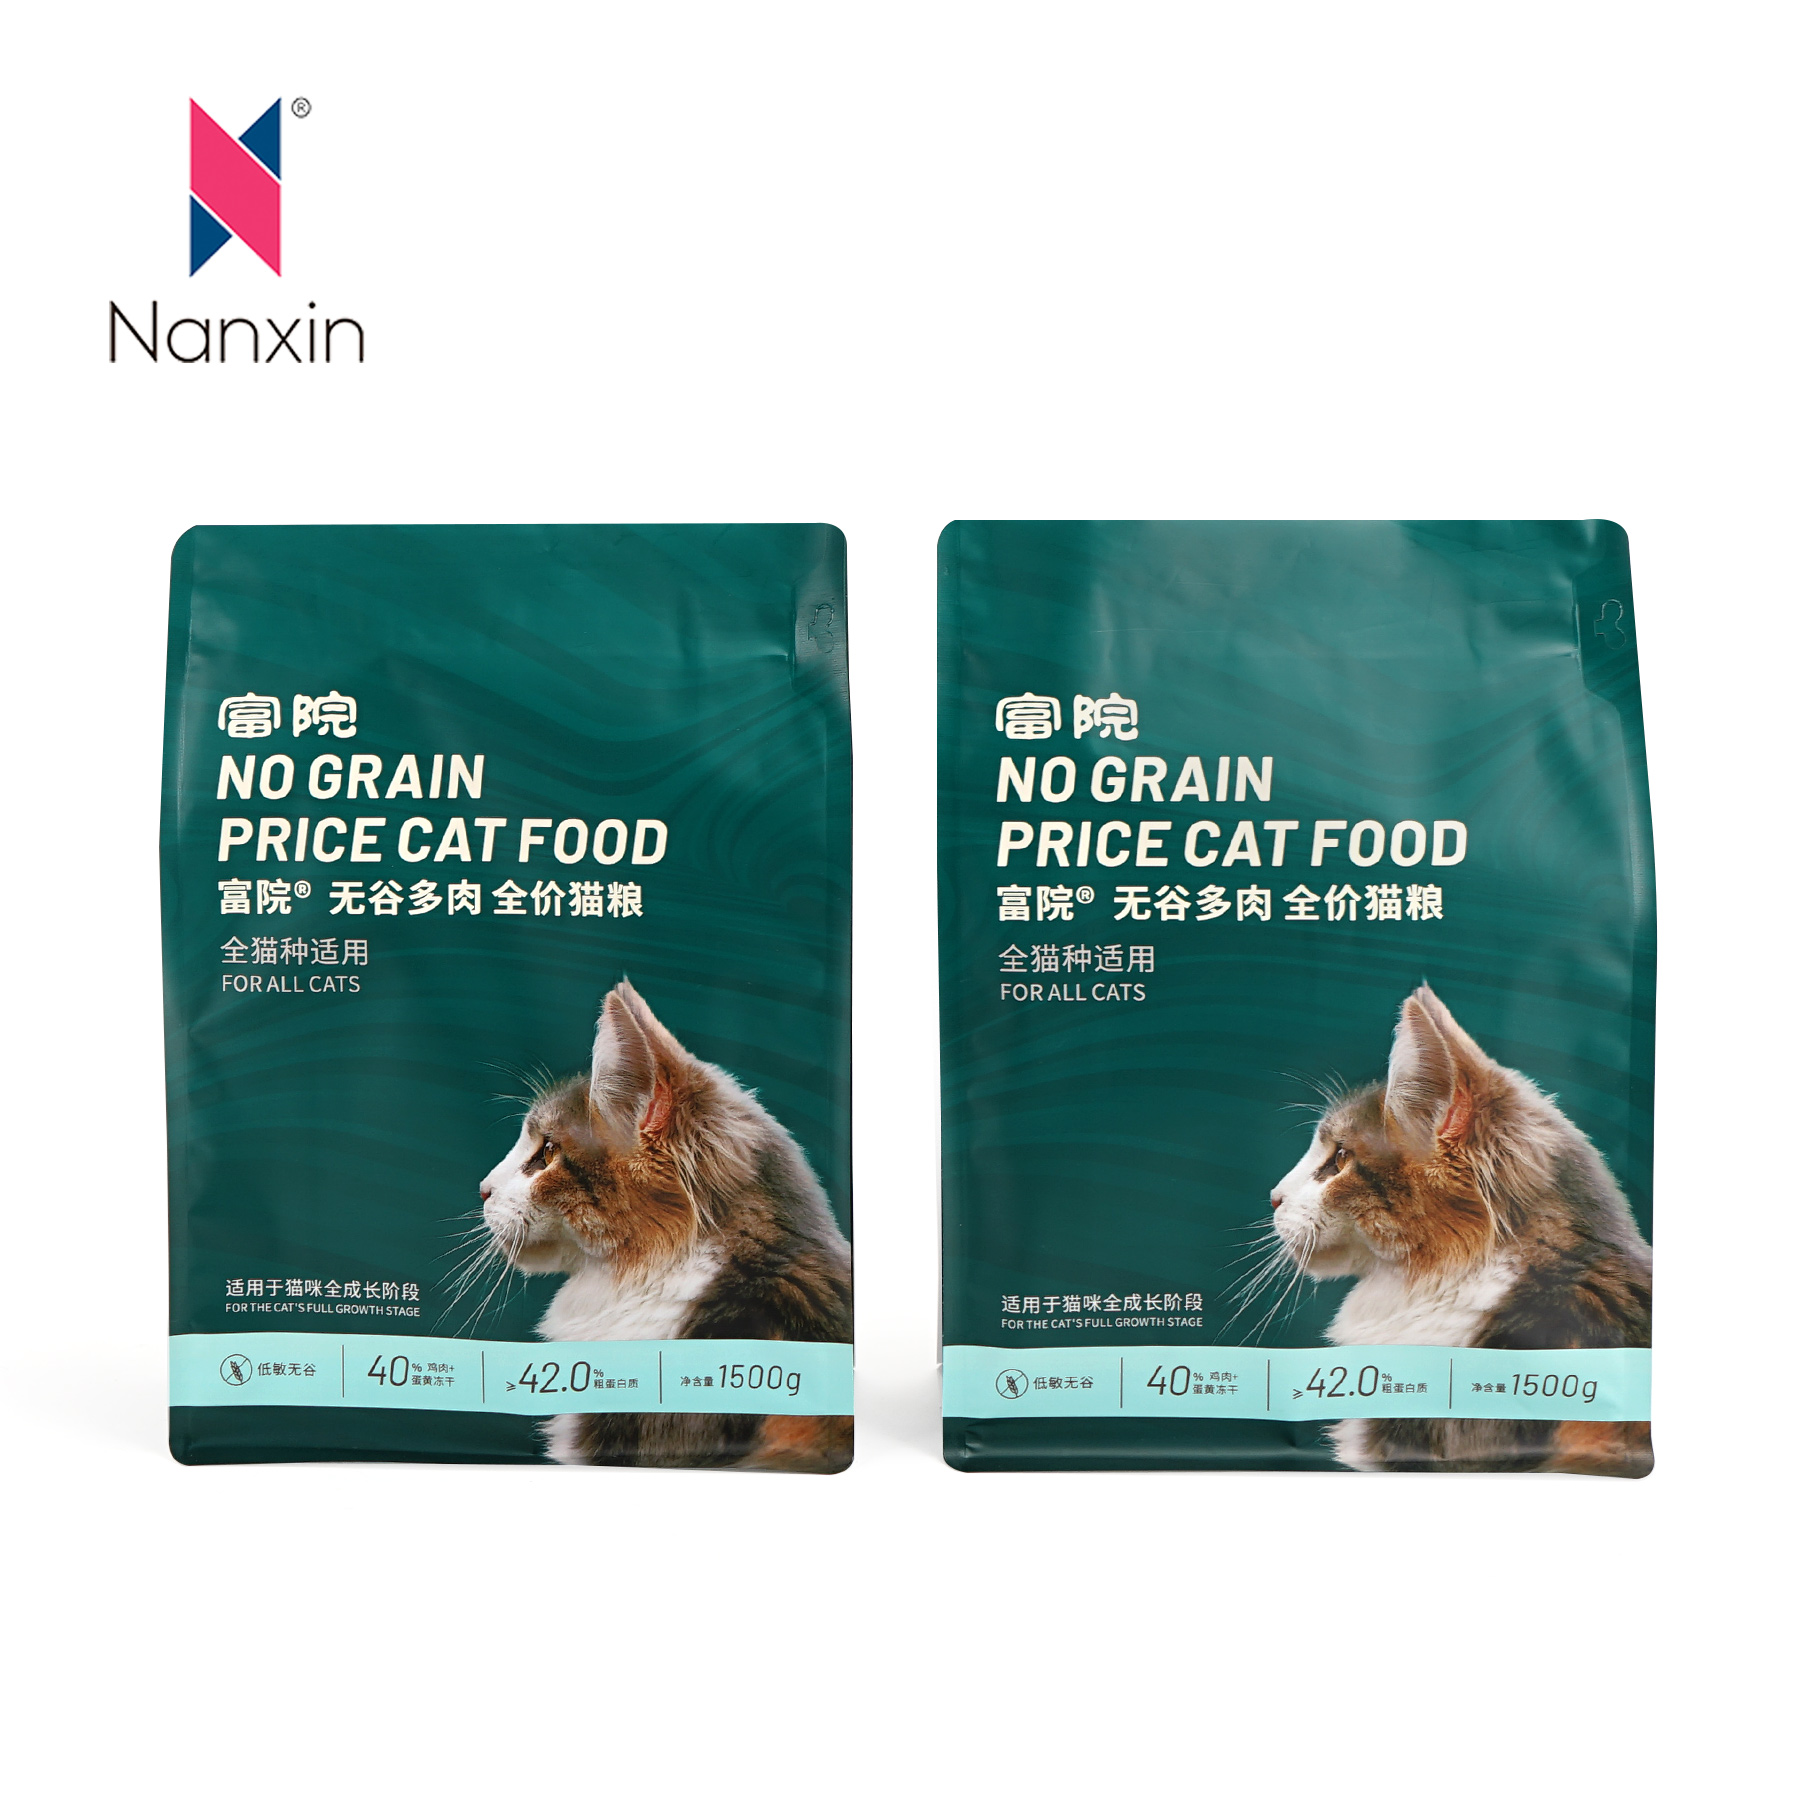 Sacchetto di plastica di fondu quadratu prufessiunale per l'imballaggio ziplock à otto lati per l'alimentu per gatti è cani